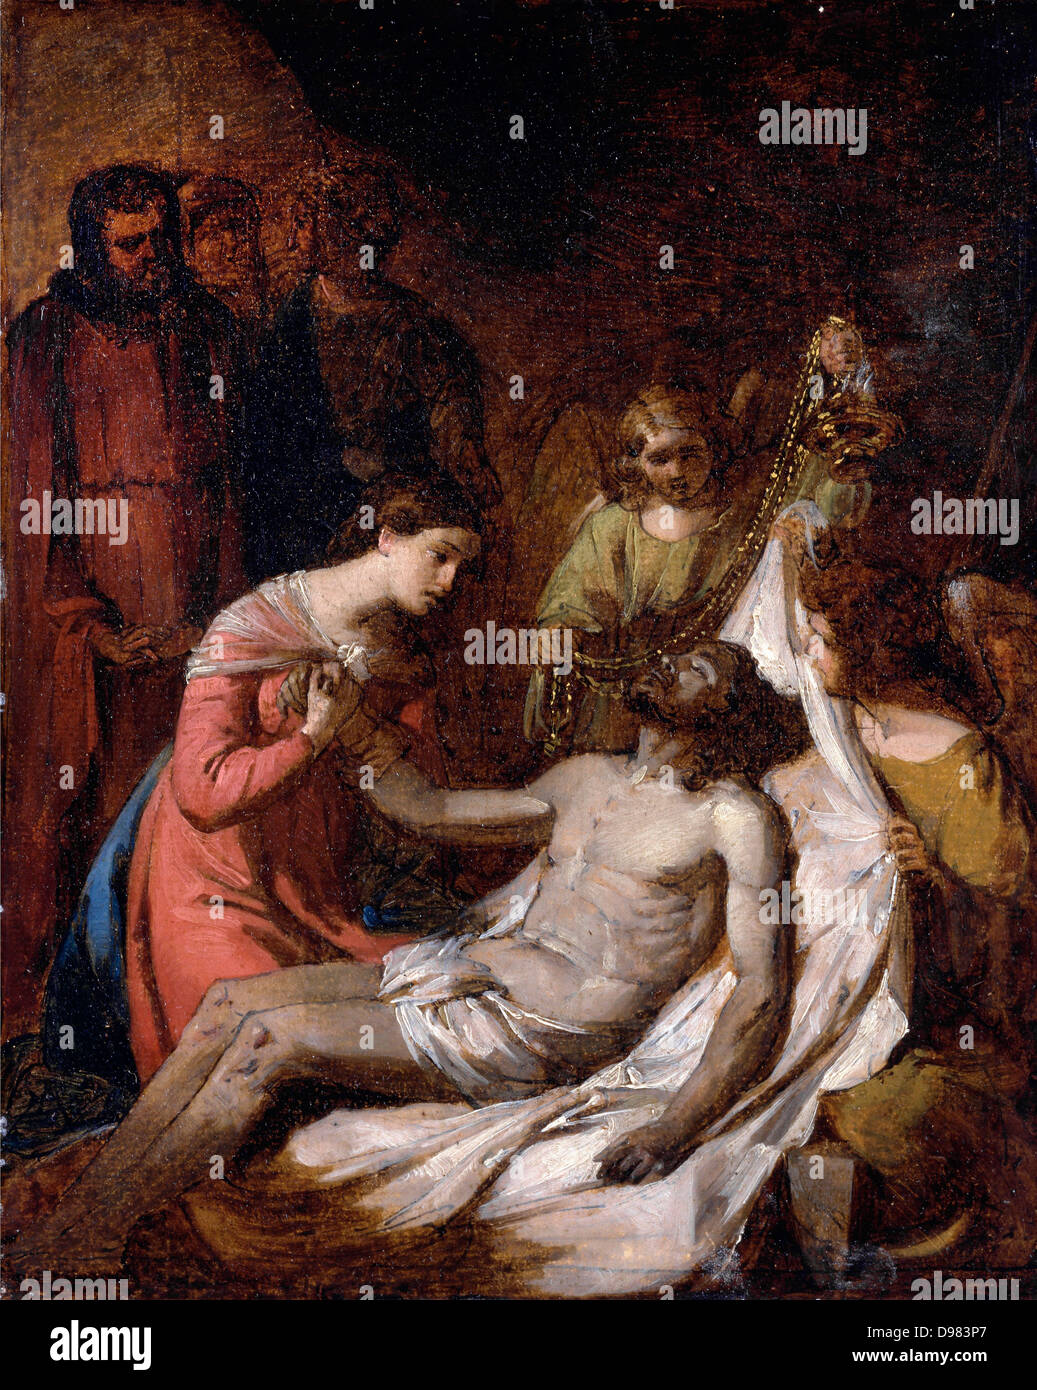 Benjamin West, Studie über die Klage auf den toten Christus. Ca. 1785. Öl auf Leinwand. Yale Center for British Art, New Haven, C Stockfoto